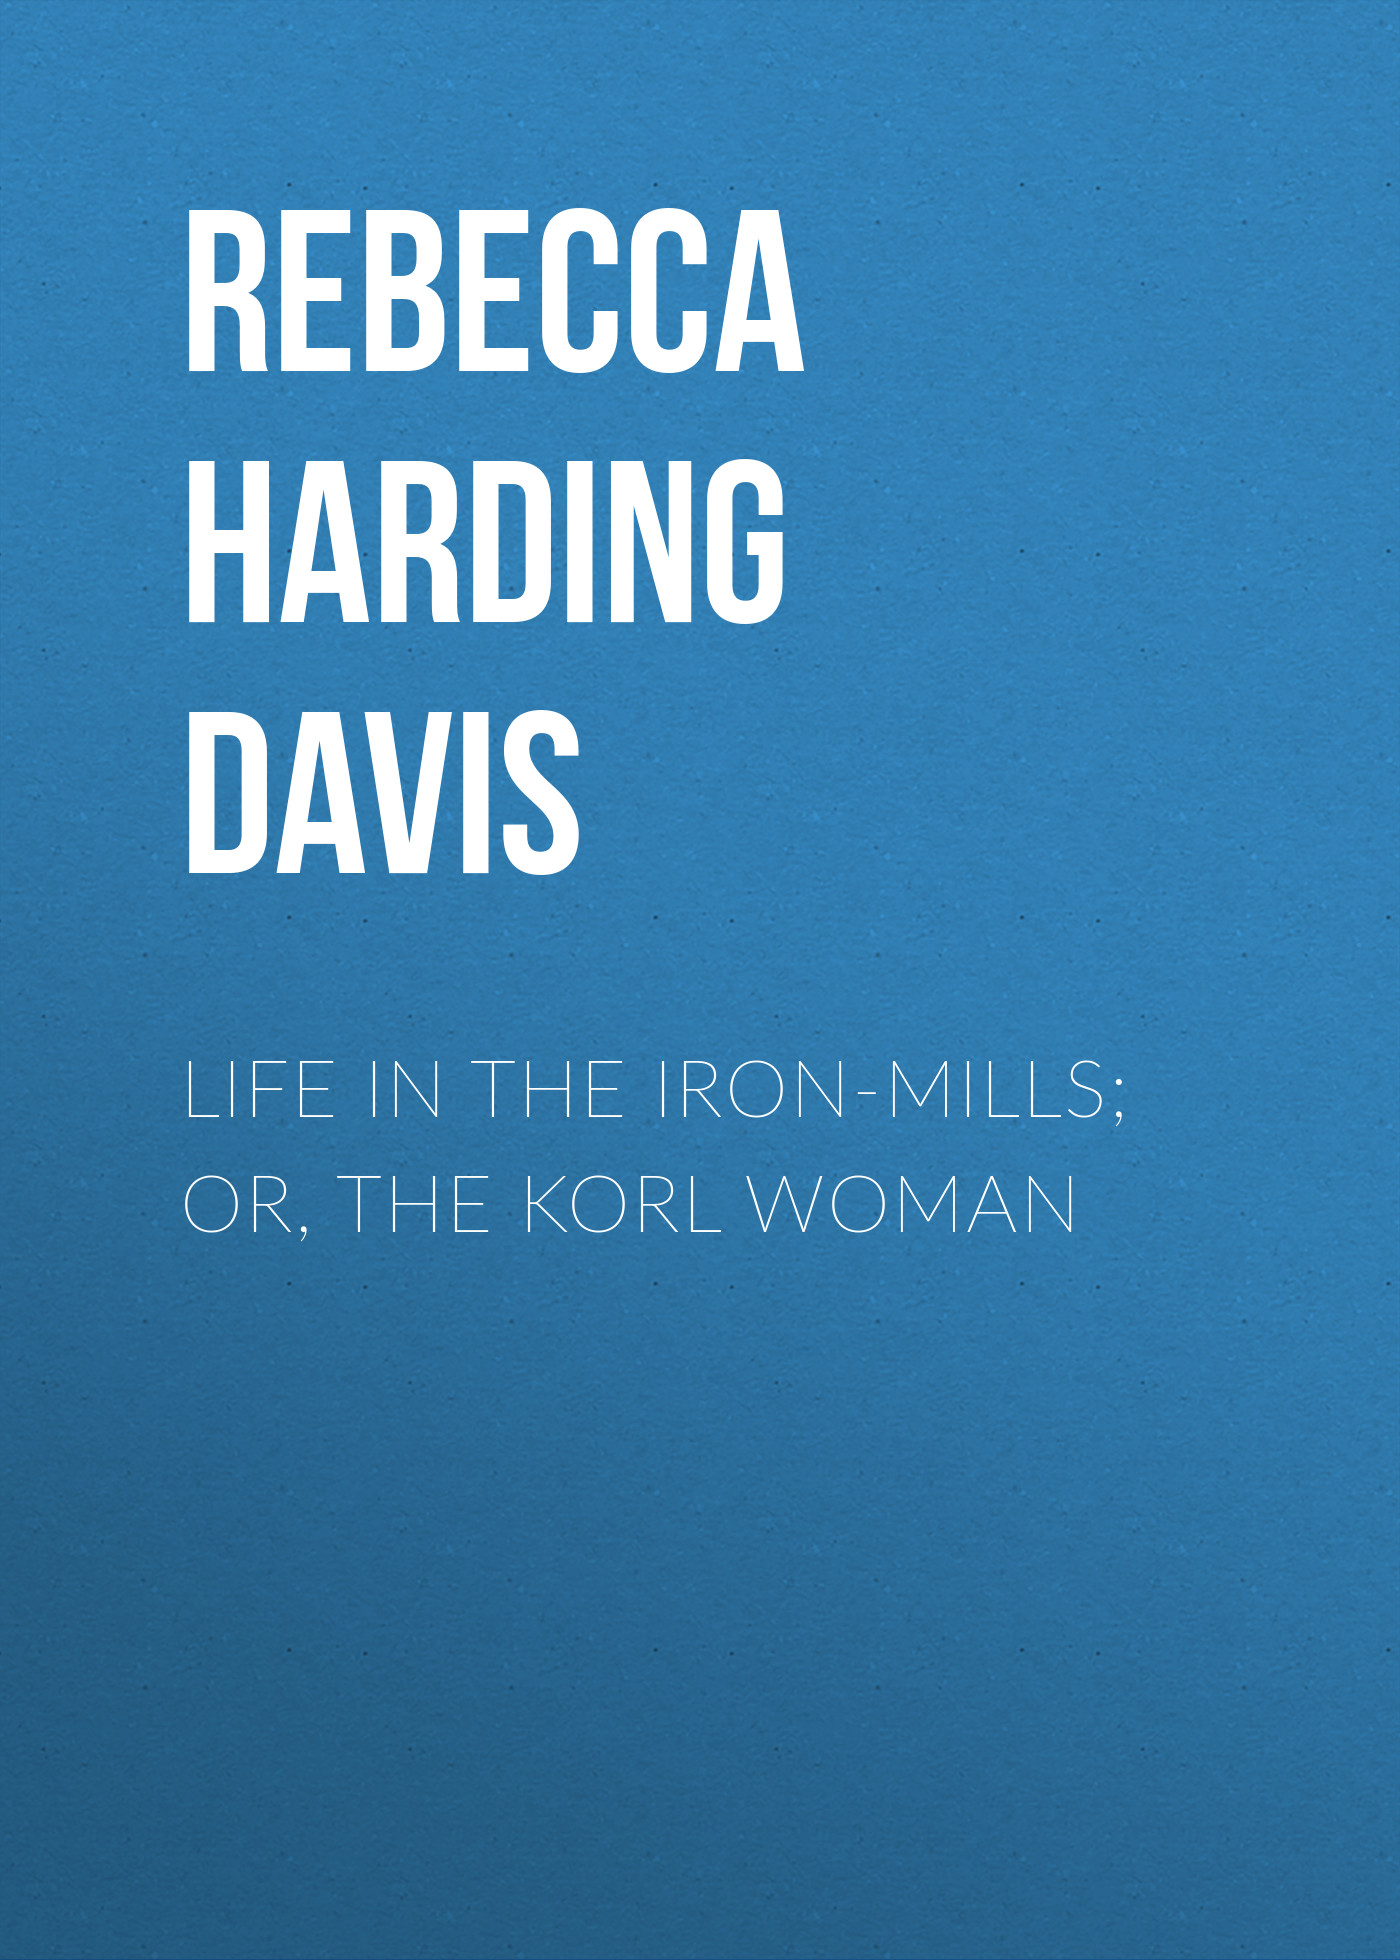 Книга Life in the Iron-Mills; Or, The Korl Woman из серии , созданная Rebecca Harding Davis, может относится к жанру Зарубежная классика, Зарубежная старинная литература. Стоимость электронной книги Life in the Iron-Mills; Or, The Korl Woman с идентификатором 34837630 составляет 0 руб.